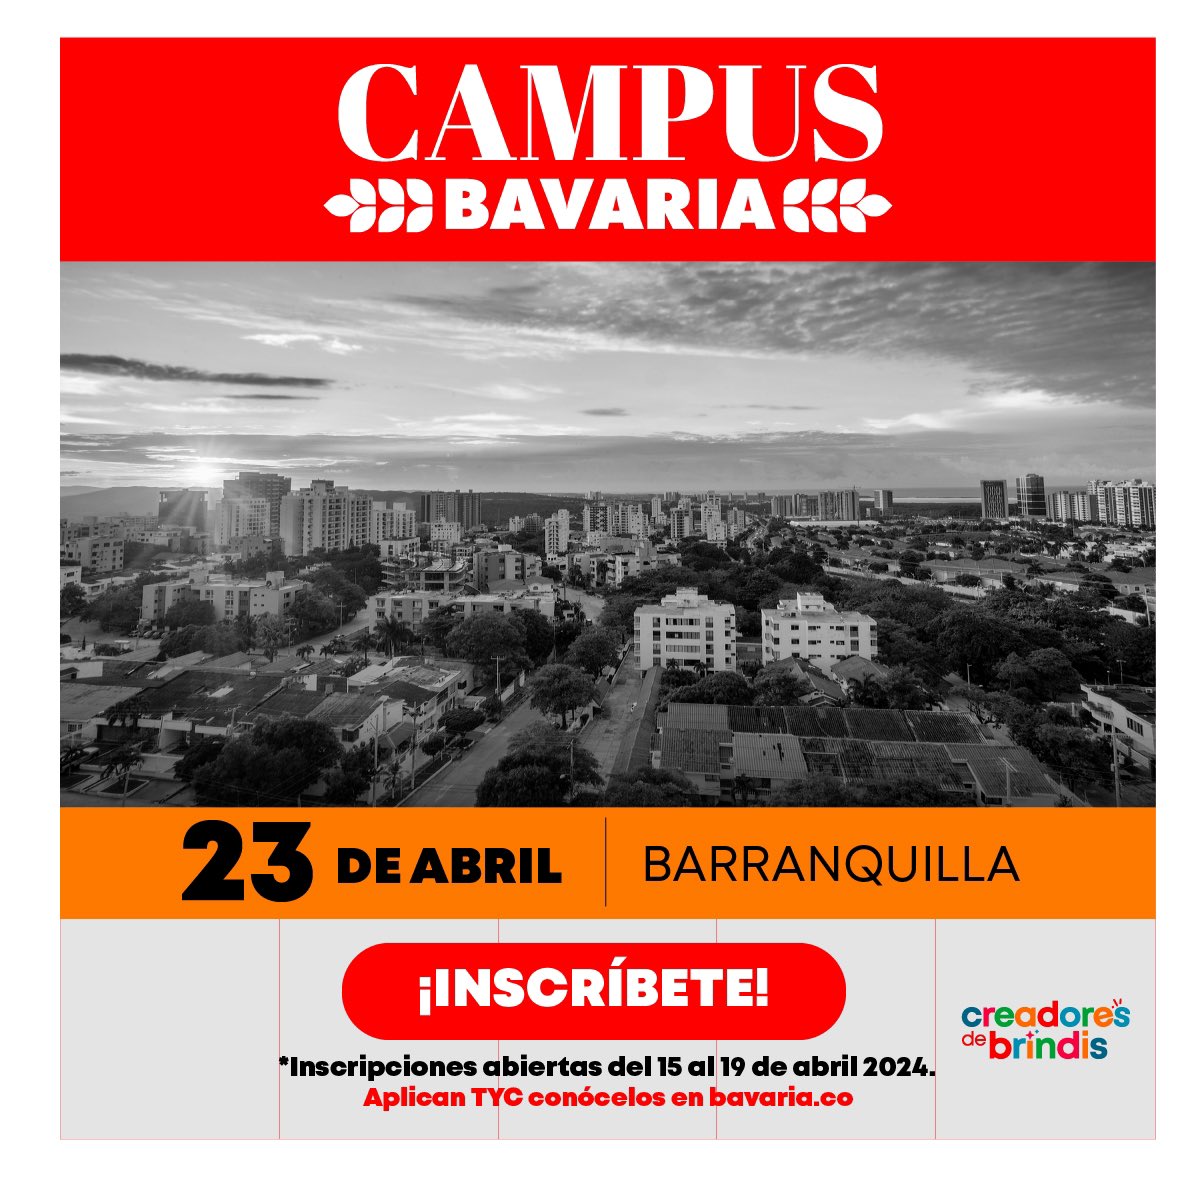 🚀 ¡Atención estudiantes de Barranquilla! #CampusBavaria llega a 'La arenosa' 🚀 Junto a Wilson Ramírez, Director de la Cervecería de Barranquilla, podrás descubrir los secretos detrás de nuestras cervezas. Inscríbete aquí: forms.office.com/r/XG5i8GGYYf